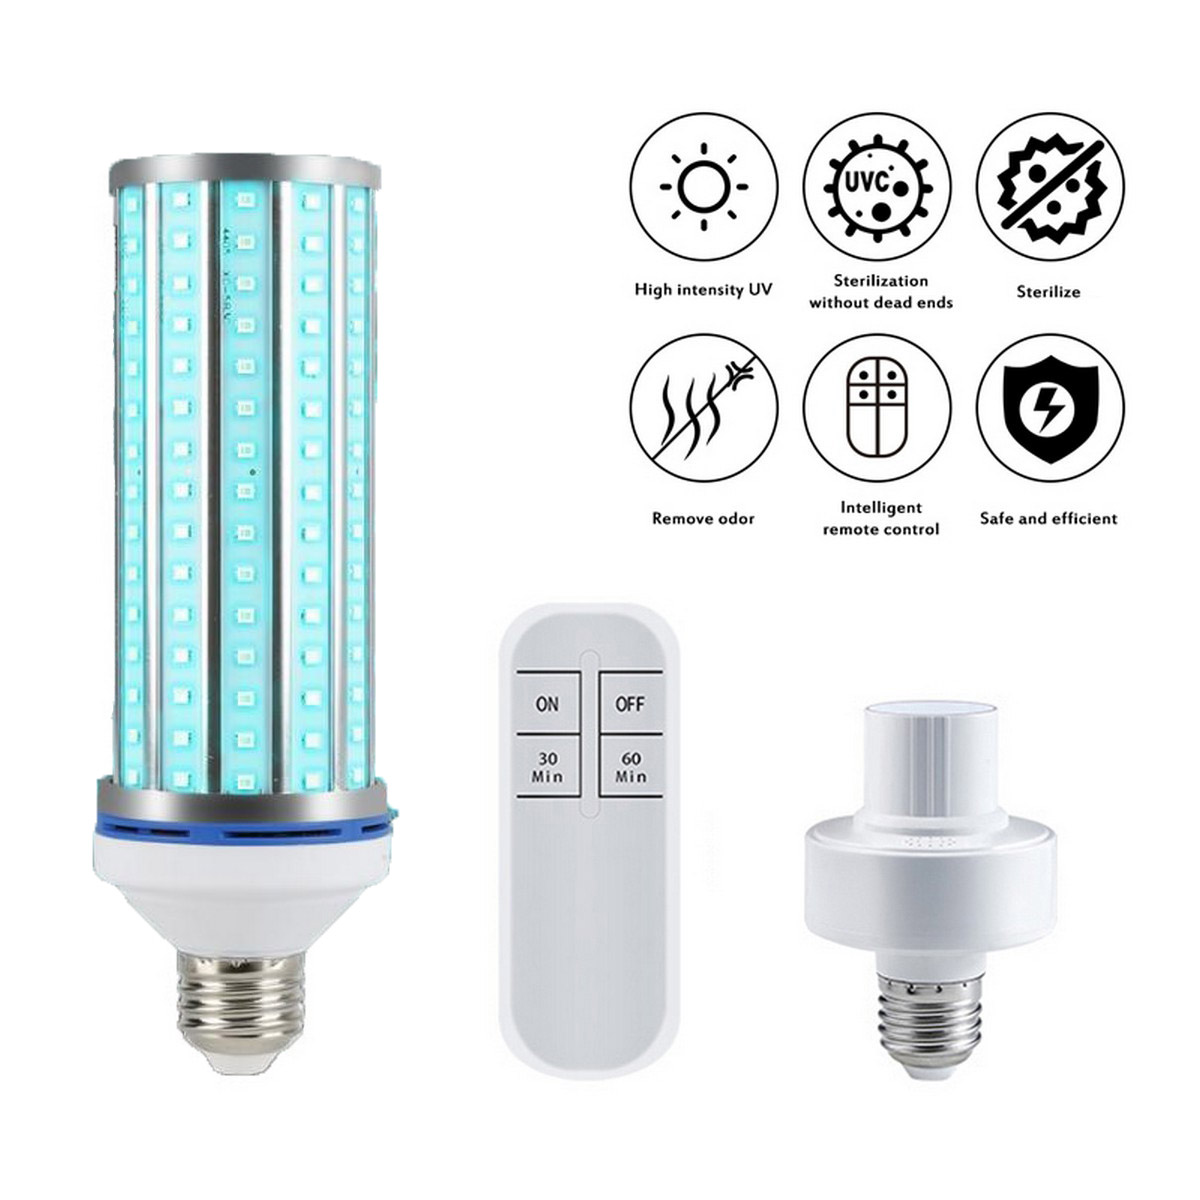 Ampoule LED SMART UVC pour désinfection et stérilisation (60W